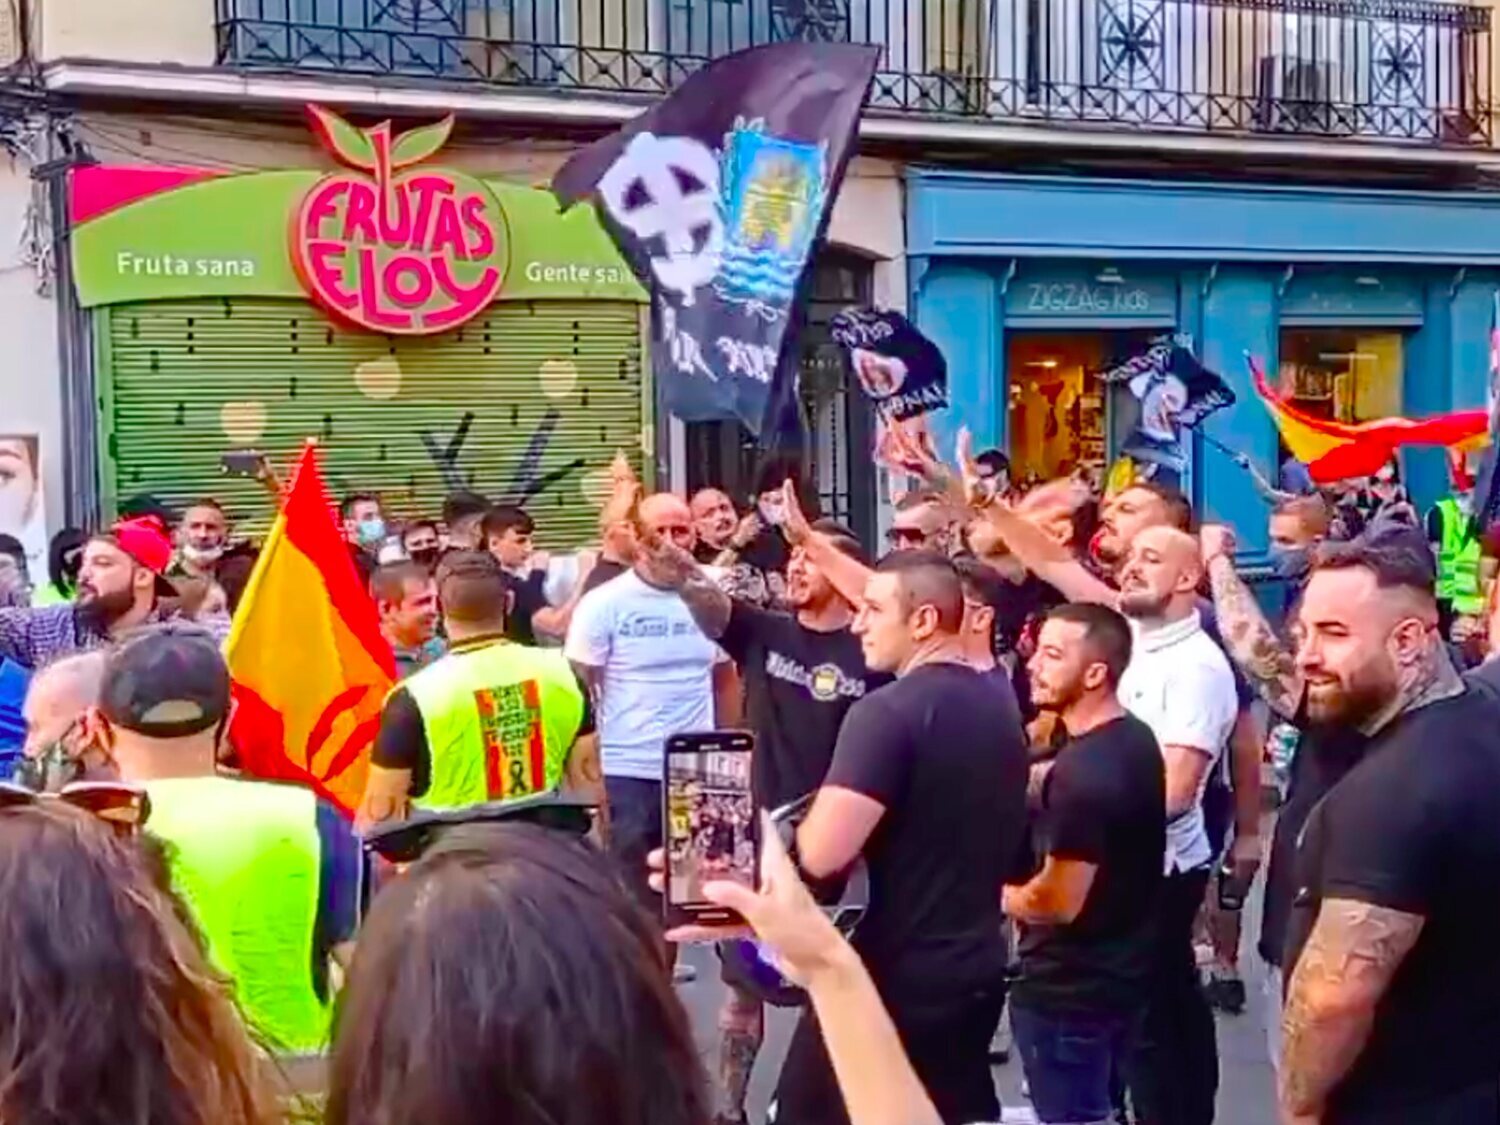 El Gobierno llevará a la Fiscalía la manifestación neonazi en Chueca con gritos de "fuera maricas"